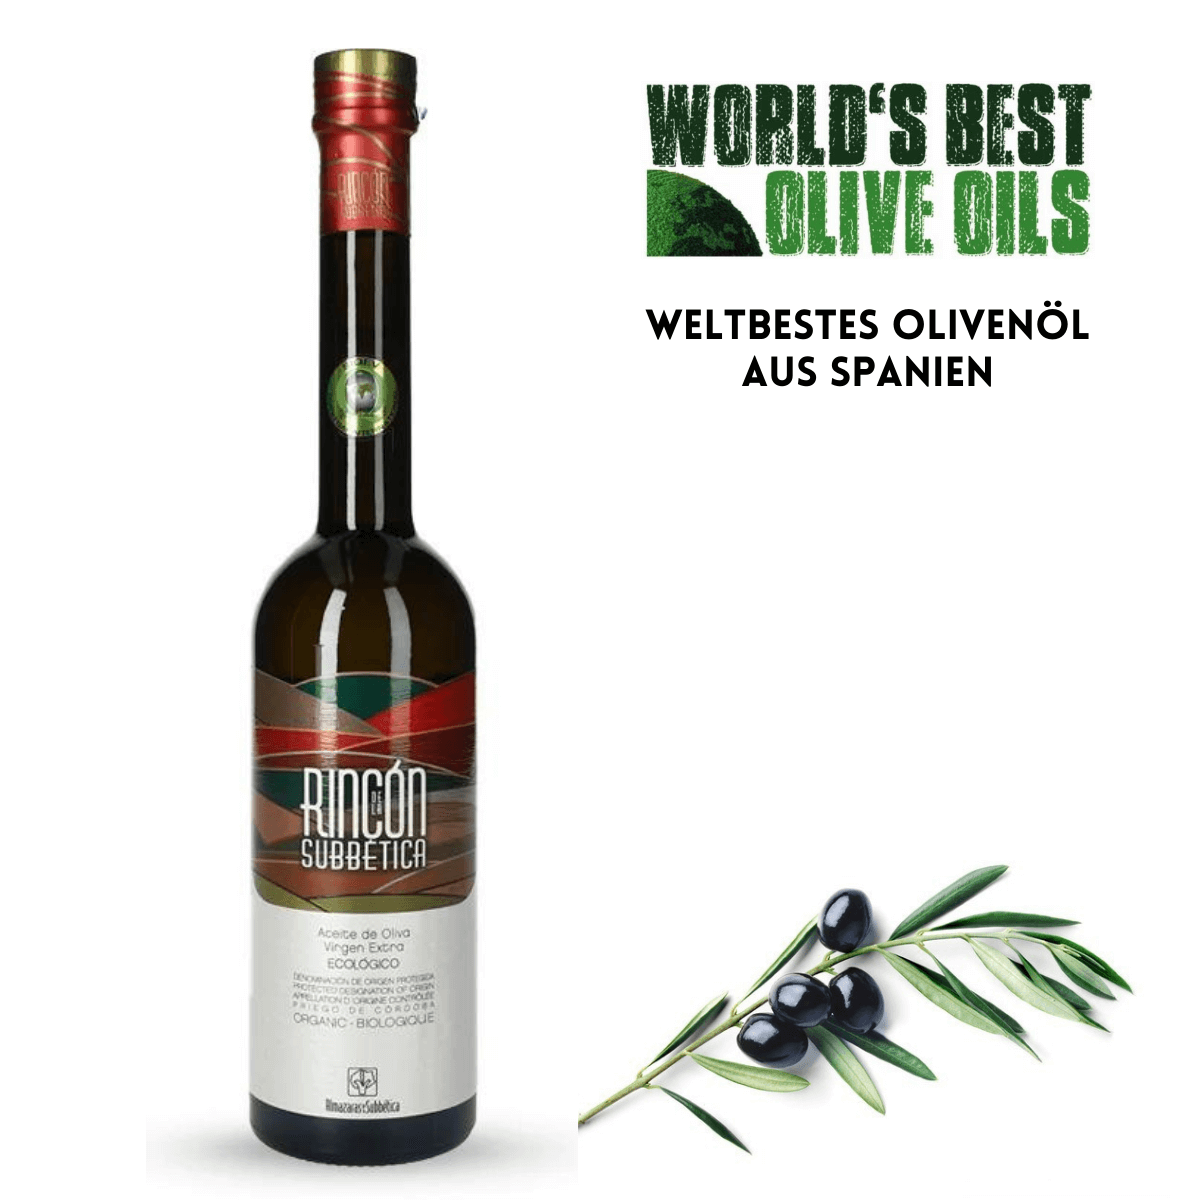 Gesundes Bio Olivenöl Rincon de la Subbetica in herausragender Qualität aus Andalusien. Wiederholter Testsieger weltbestes Olivenöl.